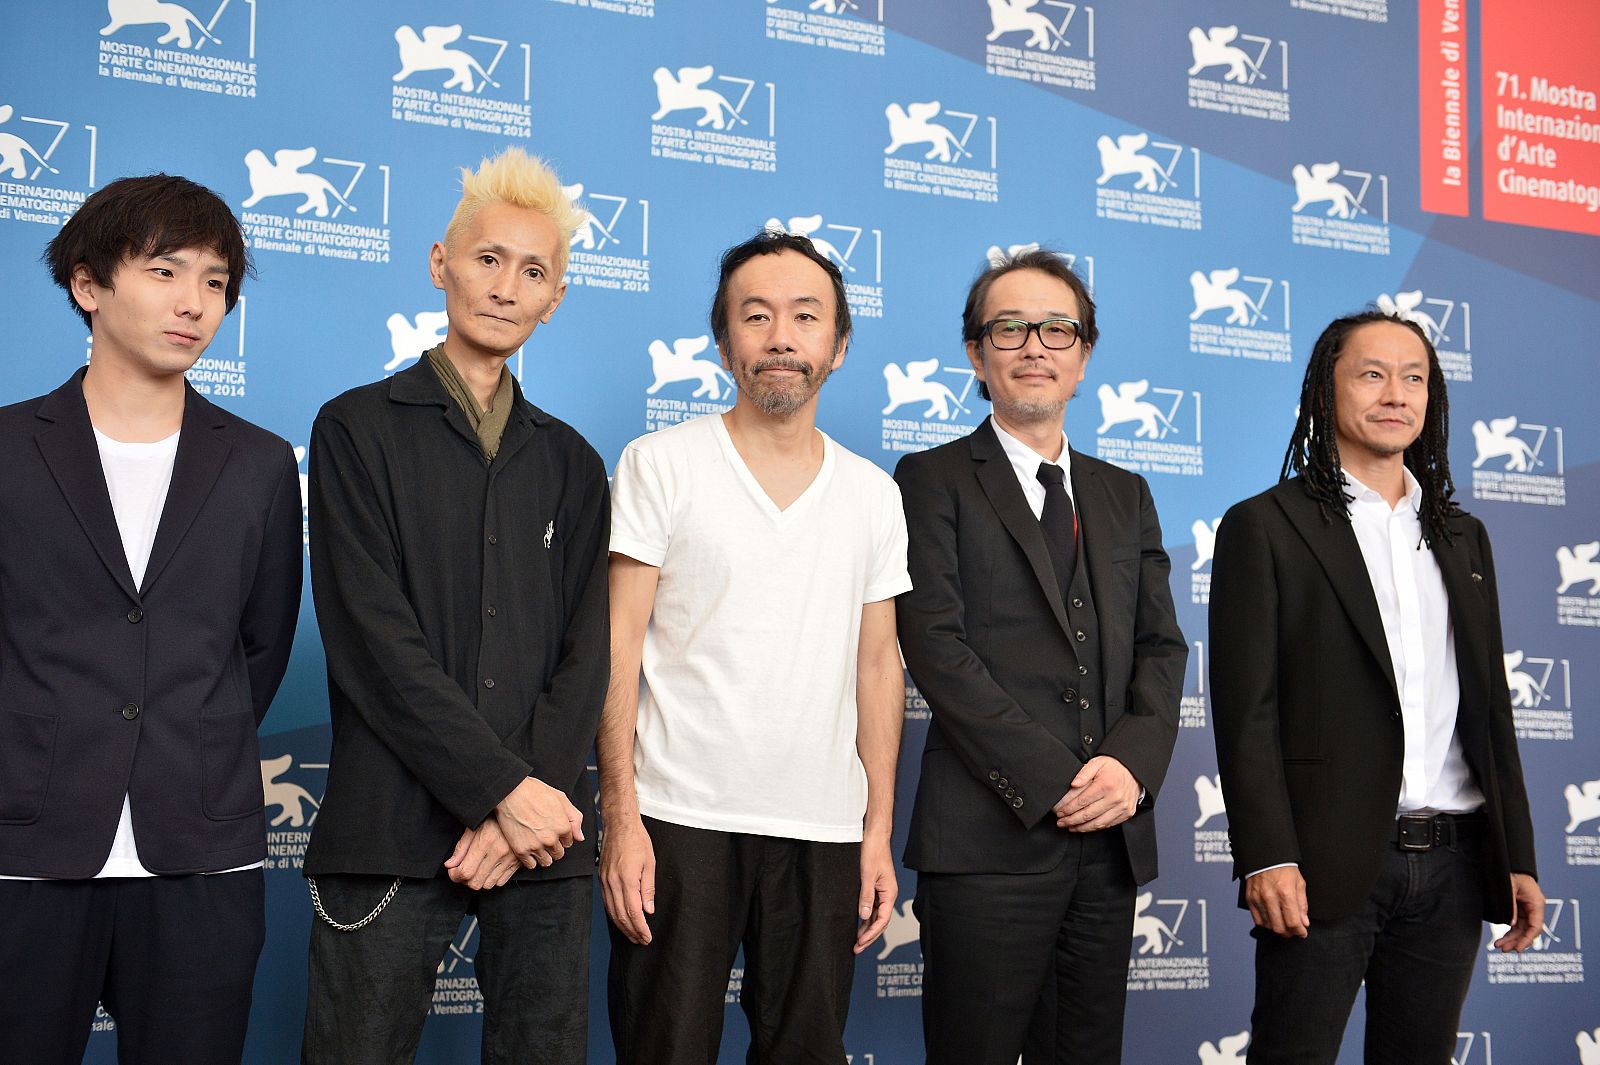 El director Shinya Tsukamoto posa con el equipo de la película "Nobi" en Venecia 2014